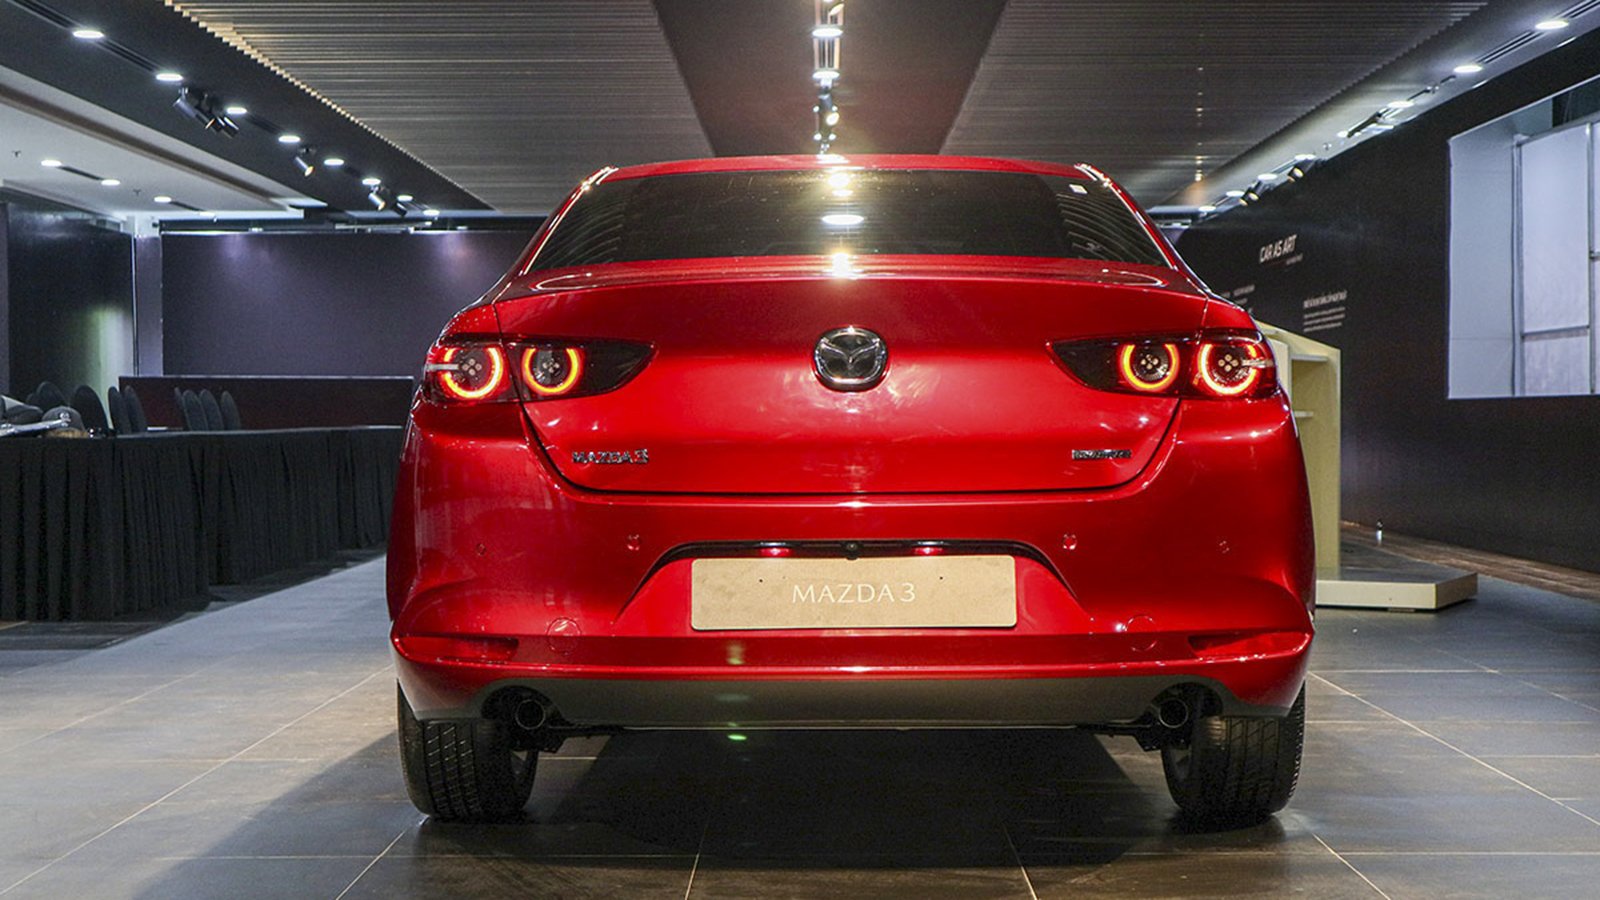 Mazda 3 xếp thứ 9 trong top các mẫu xe có lượng tìm kiếm nhiều nhất tuần qua.